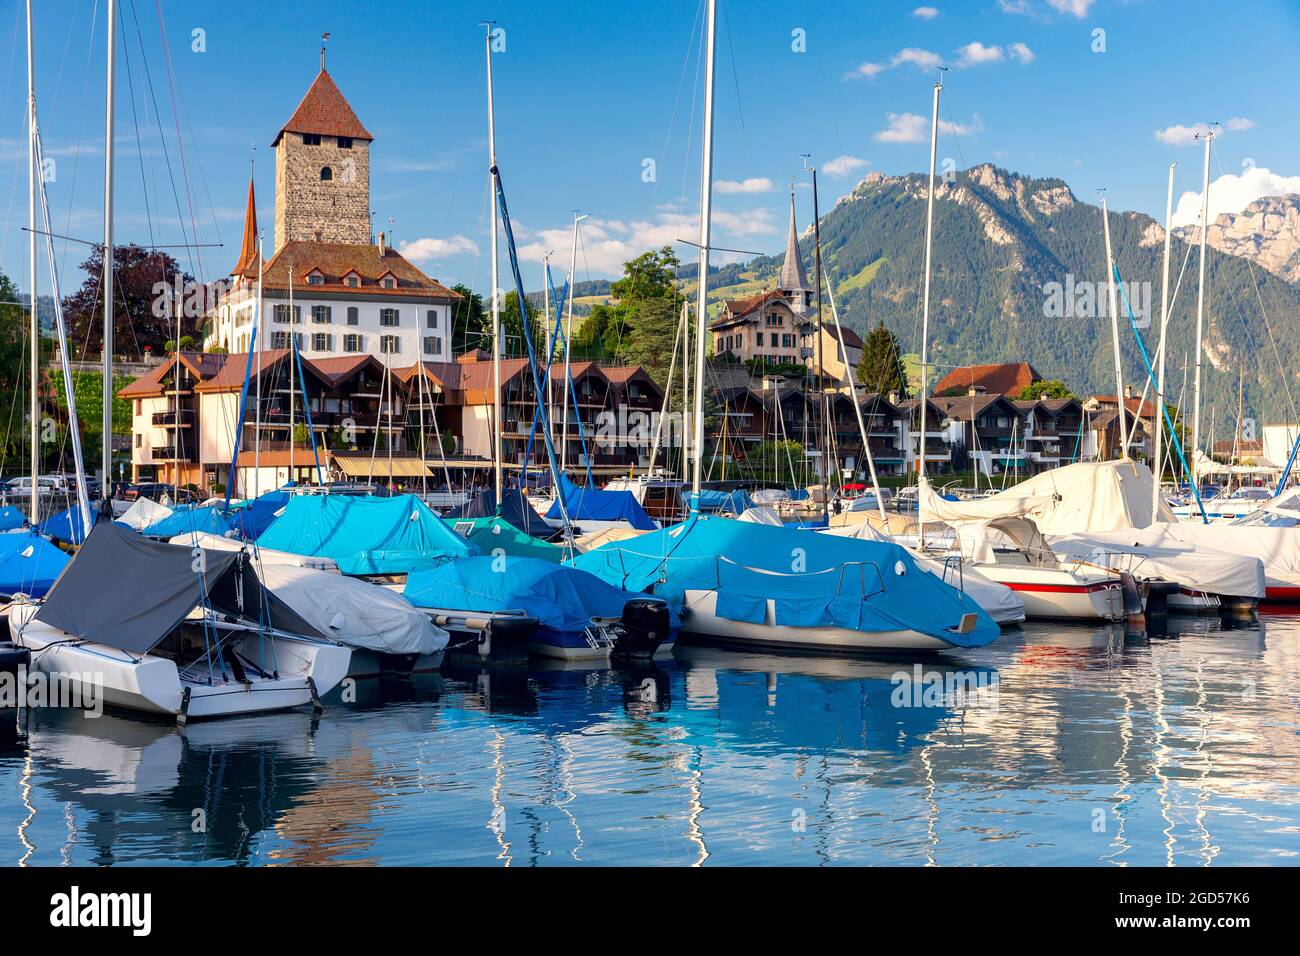 Typisches Schweizer Dorf Spiez am Ufer des Thunersees. Schweiz. Stockfoto